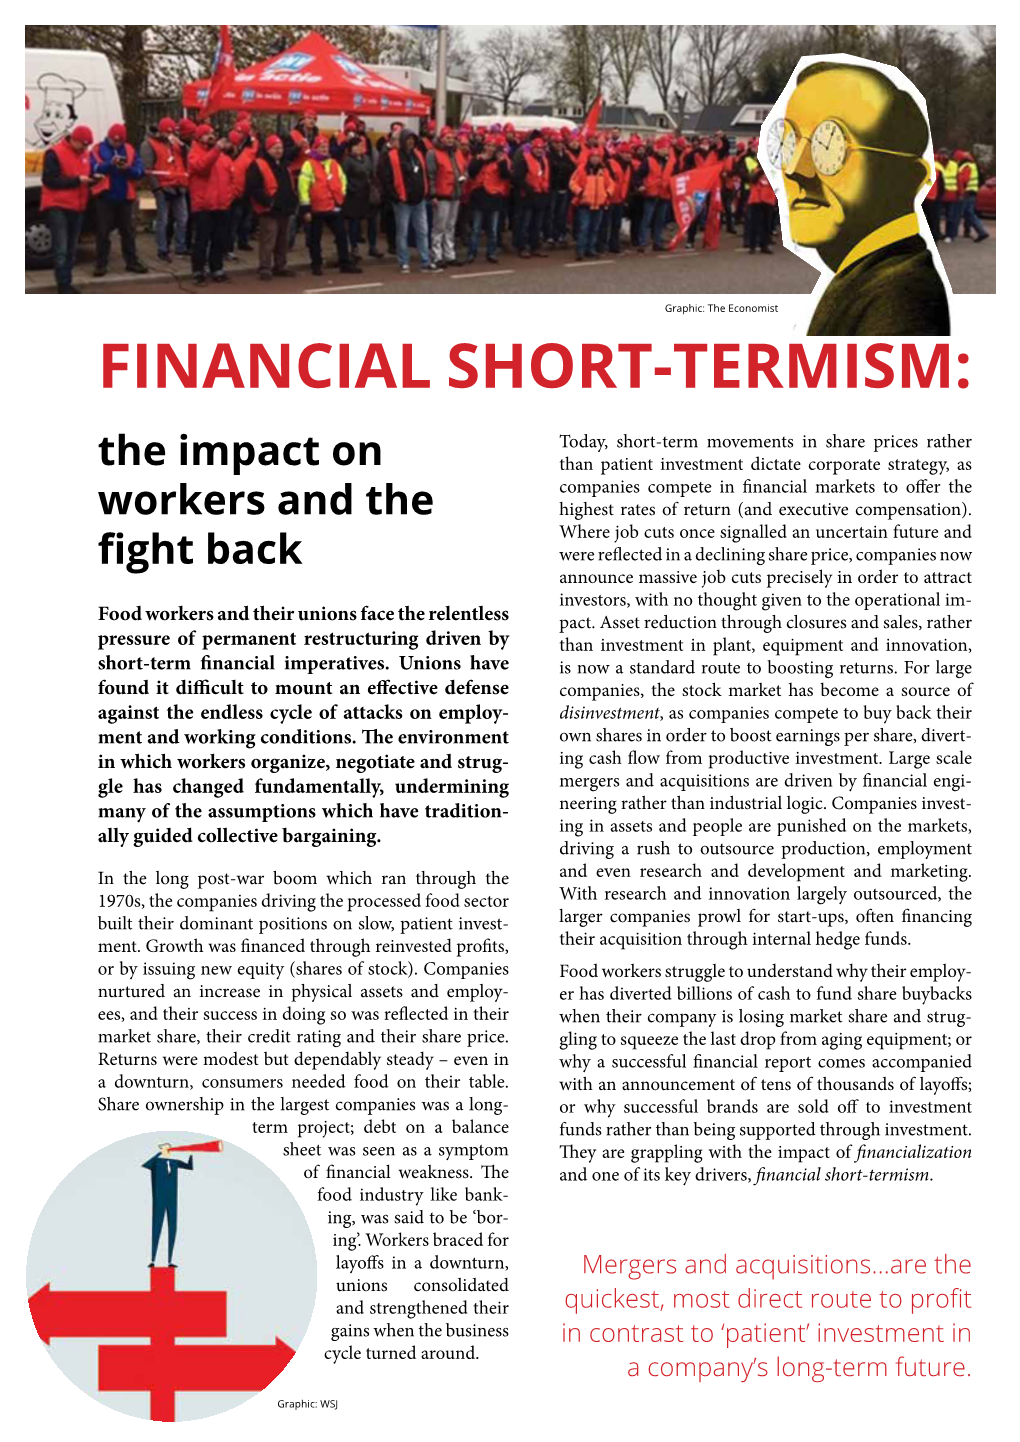 Financial Short-Termism